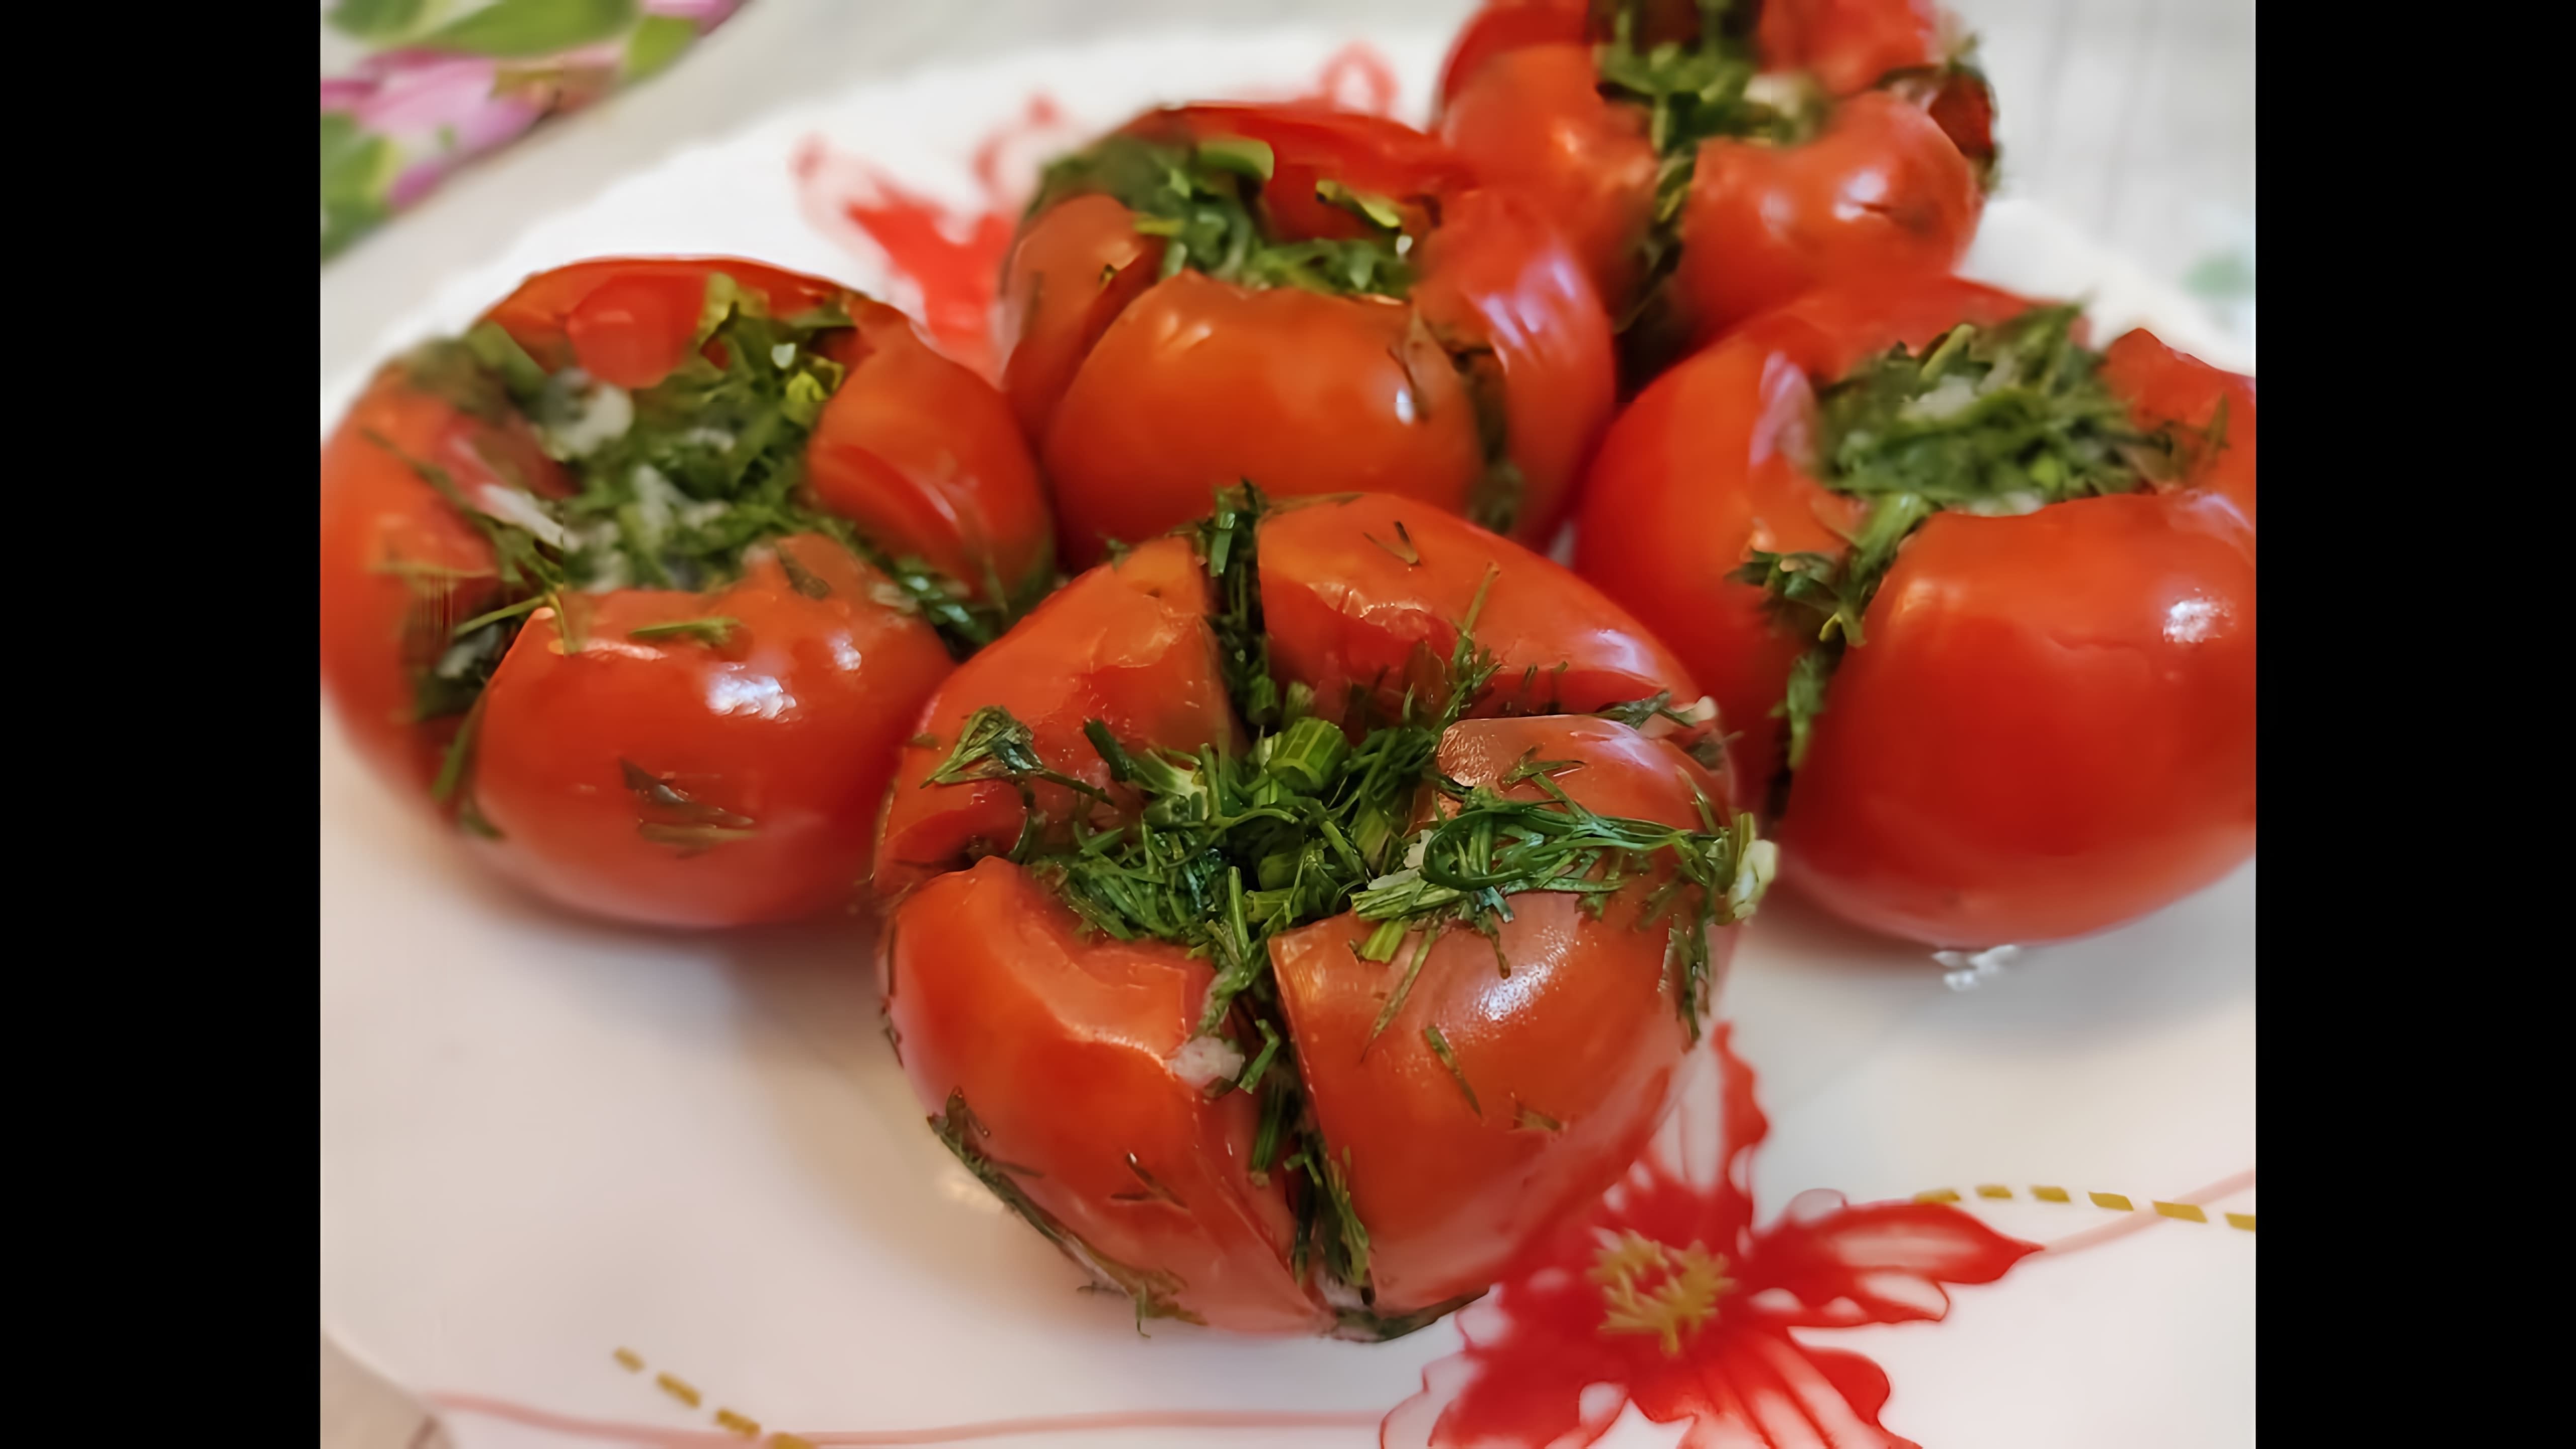 Сегодня предлагаю рецепт приготовления малосольных помидоров с зеленью и чесноком. Помидоры получаются... 